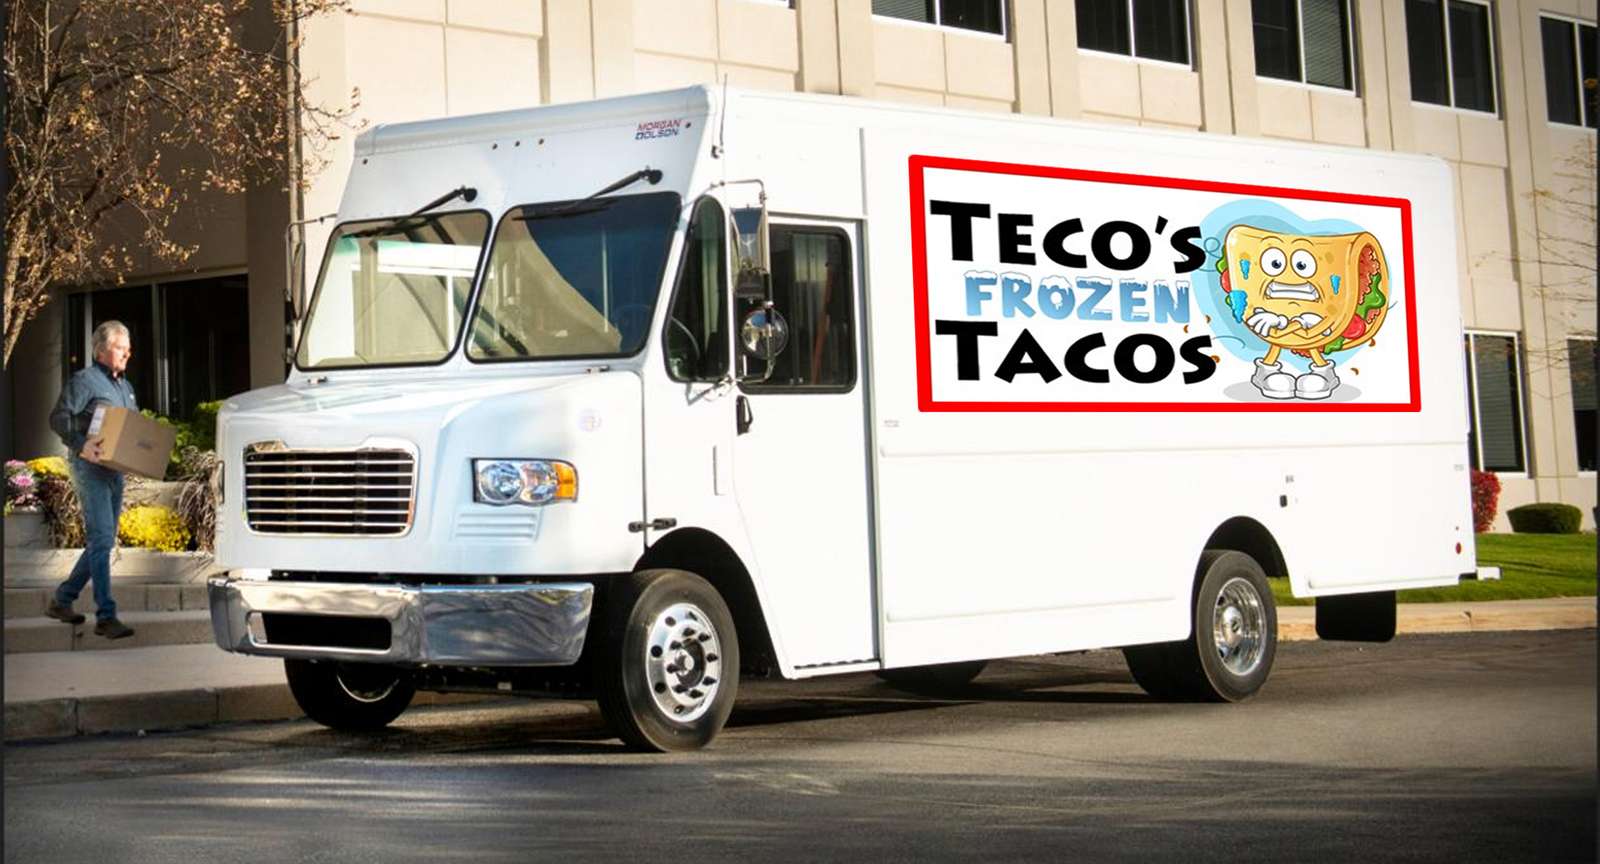 Camión de tacos de Teco puzzle online a partir de foto